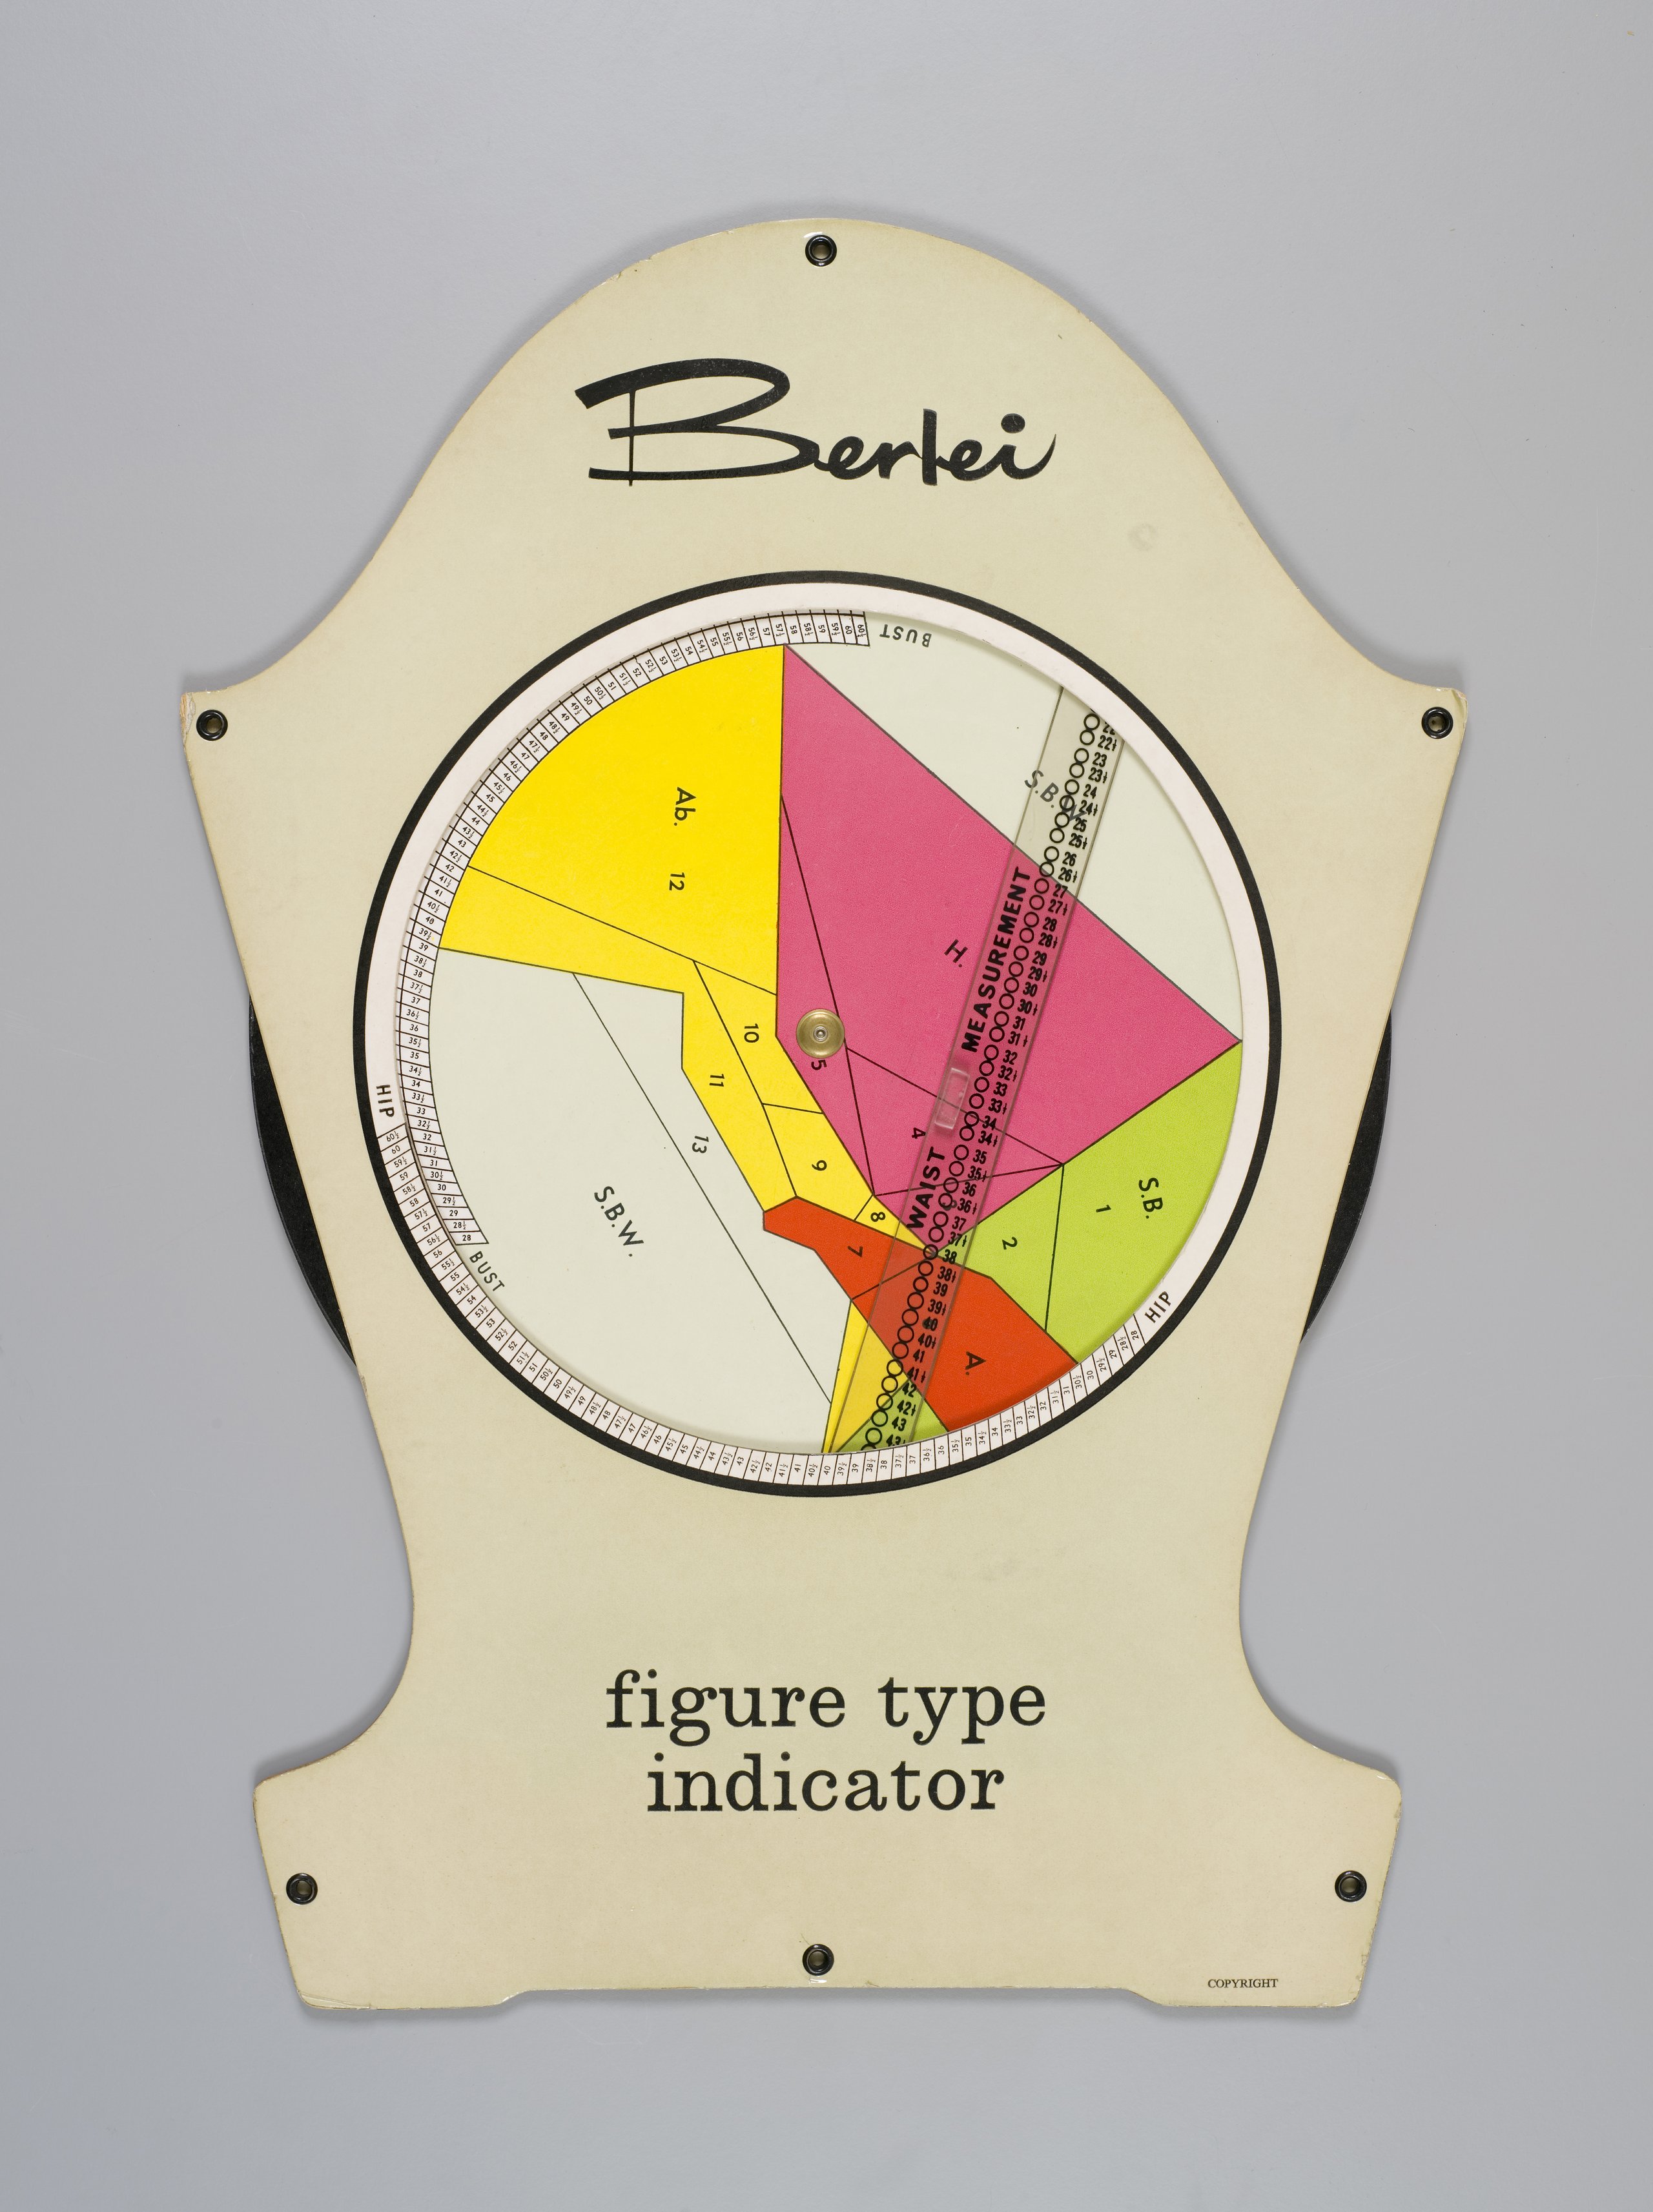 'Berlei Figure Type Indicator' chart by Berlei Ltd